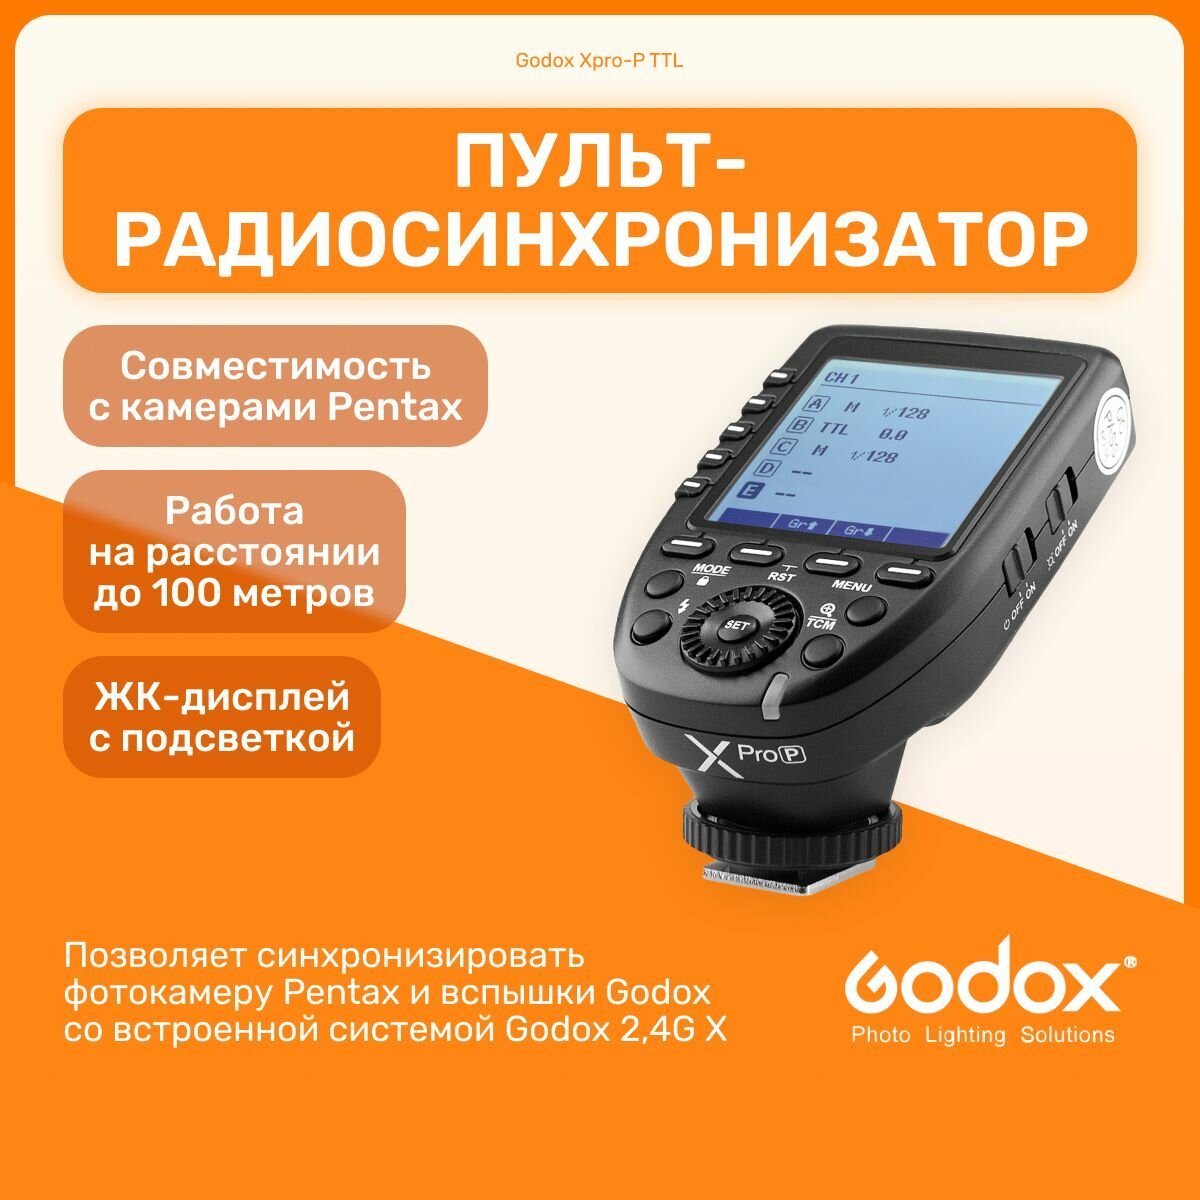 Пульт-радиосинхронизатор Godox Xpro-P TTL для Pentax, синхронизатор, импульсный свет для фото съемок